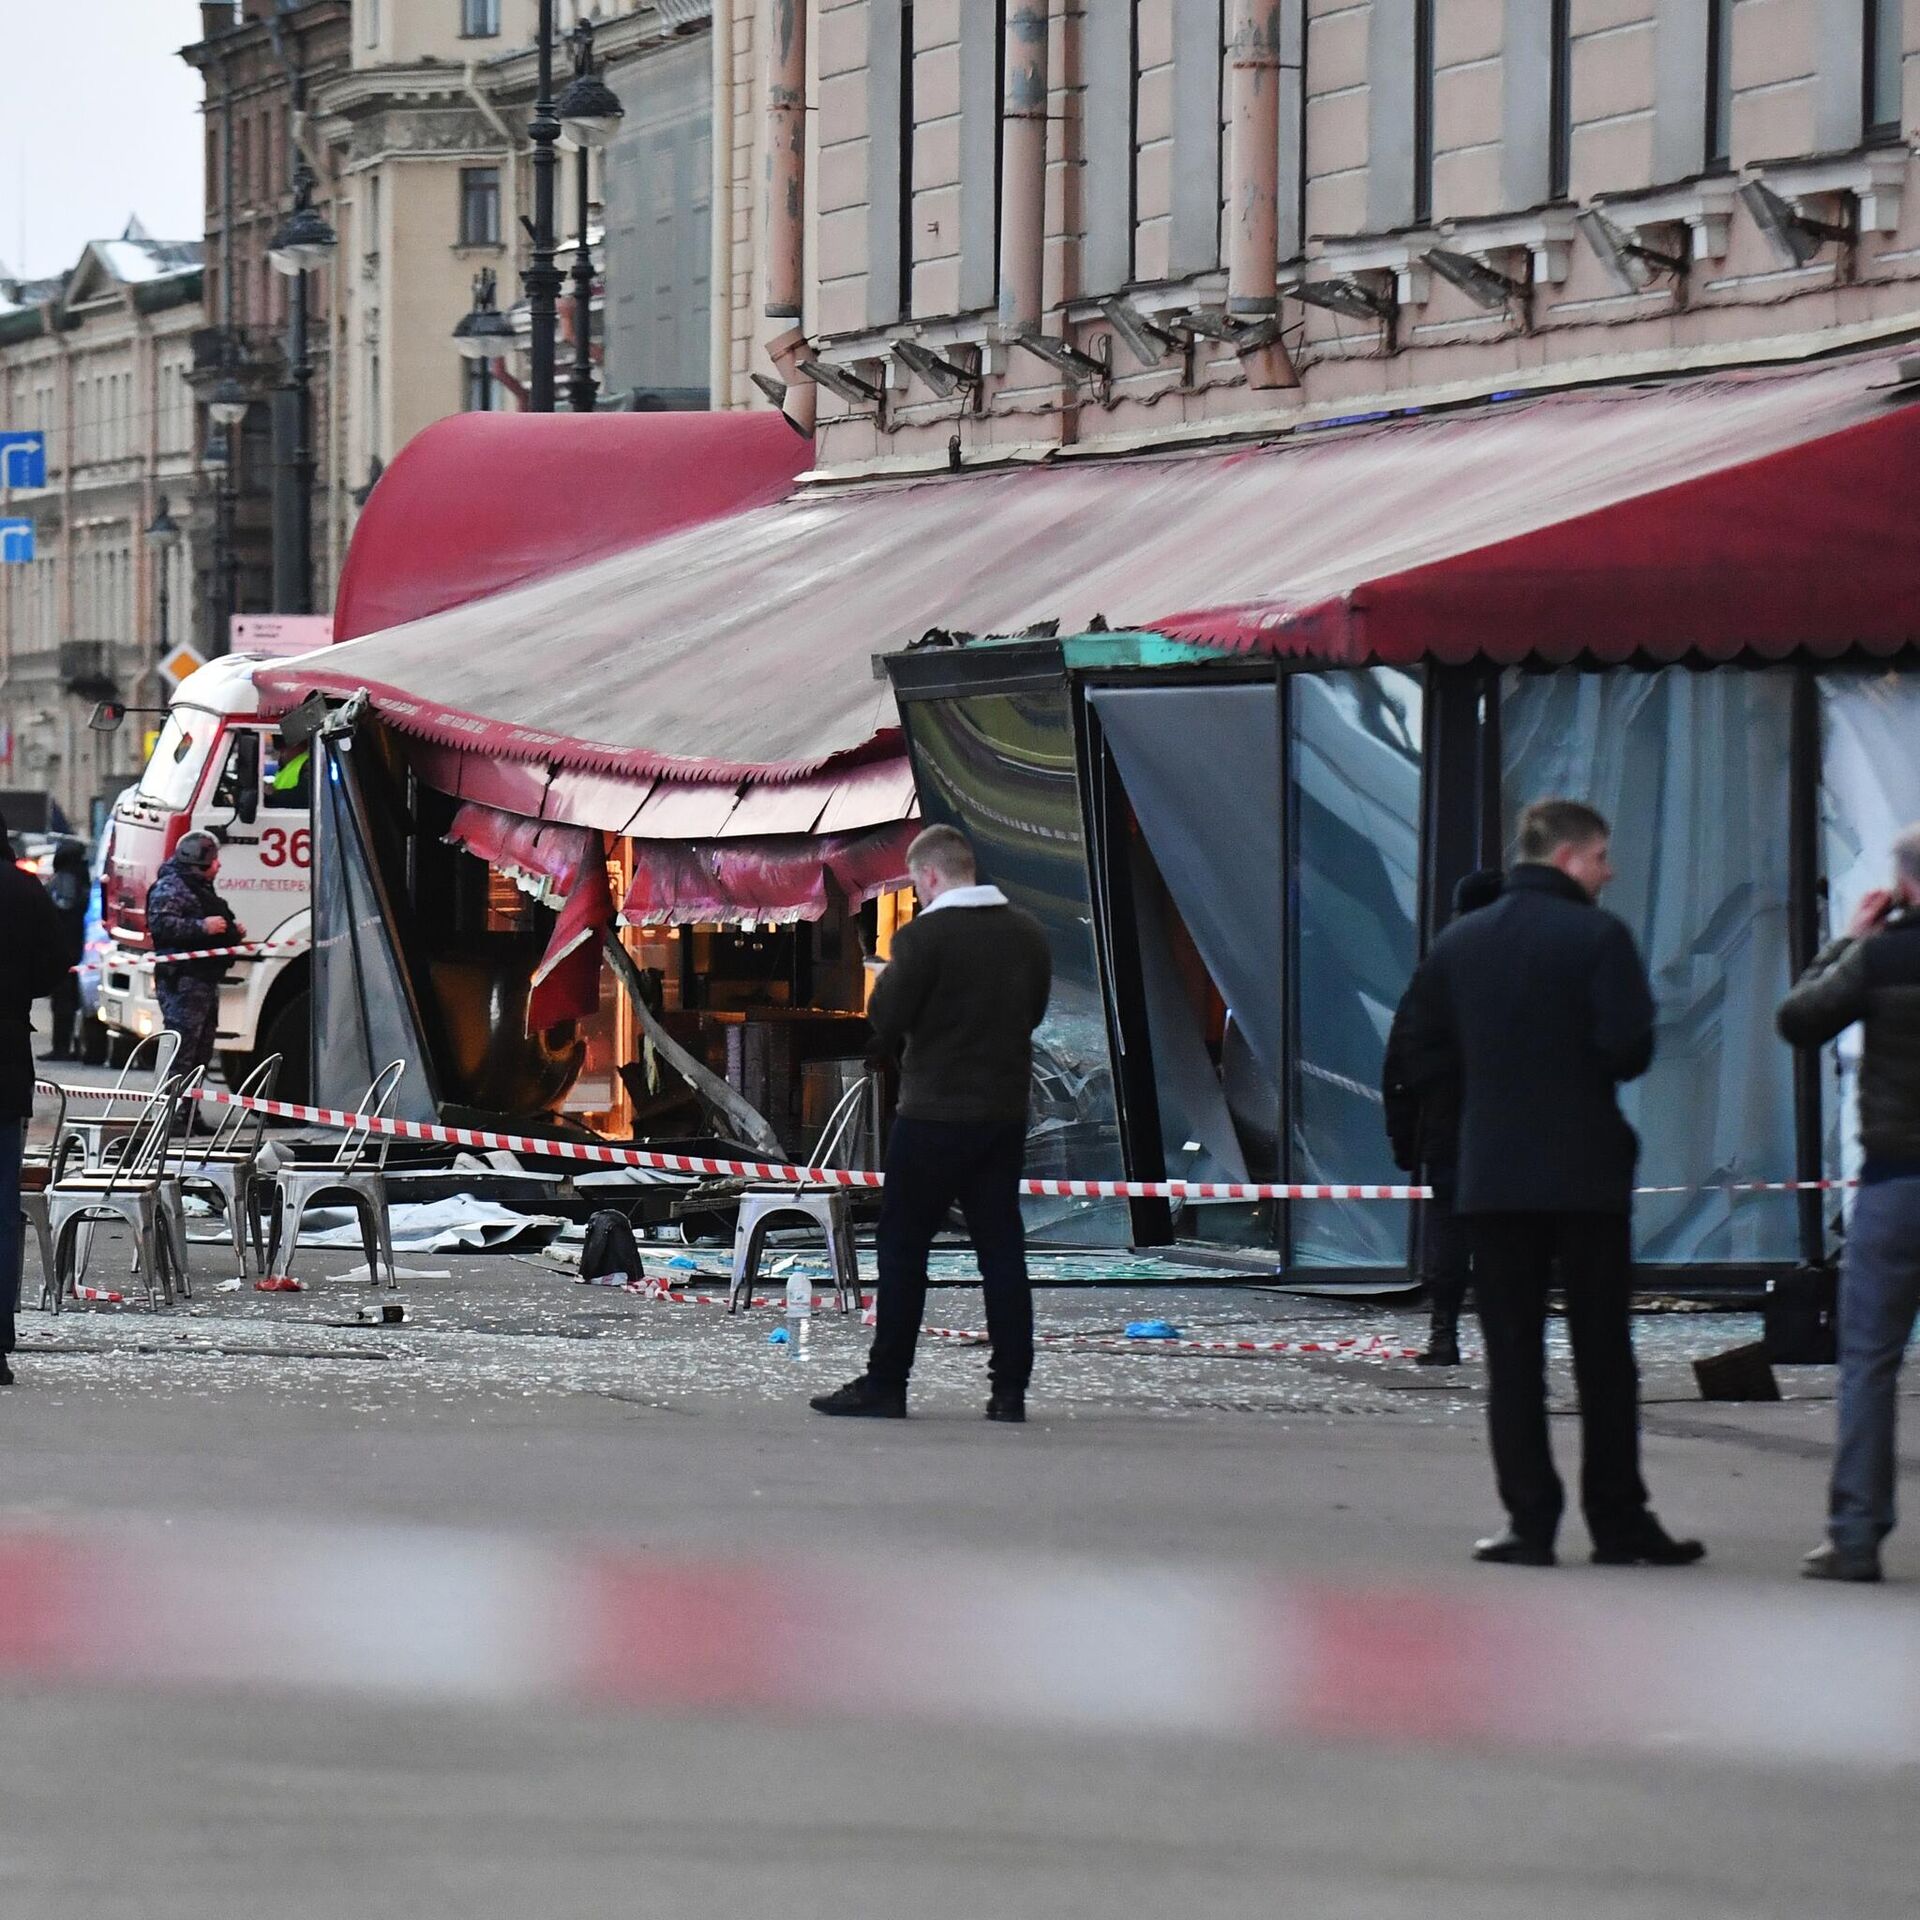 Во сколько произошел теракт вчера. Взорвали кафе в Санкт-Петербурге 2 апреля. Теракт в Санкт Петербурге. Теракт в Питере на набережной.